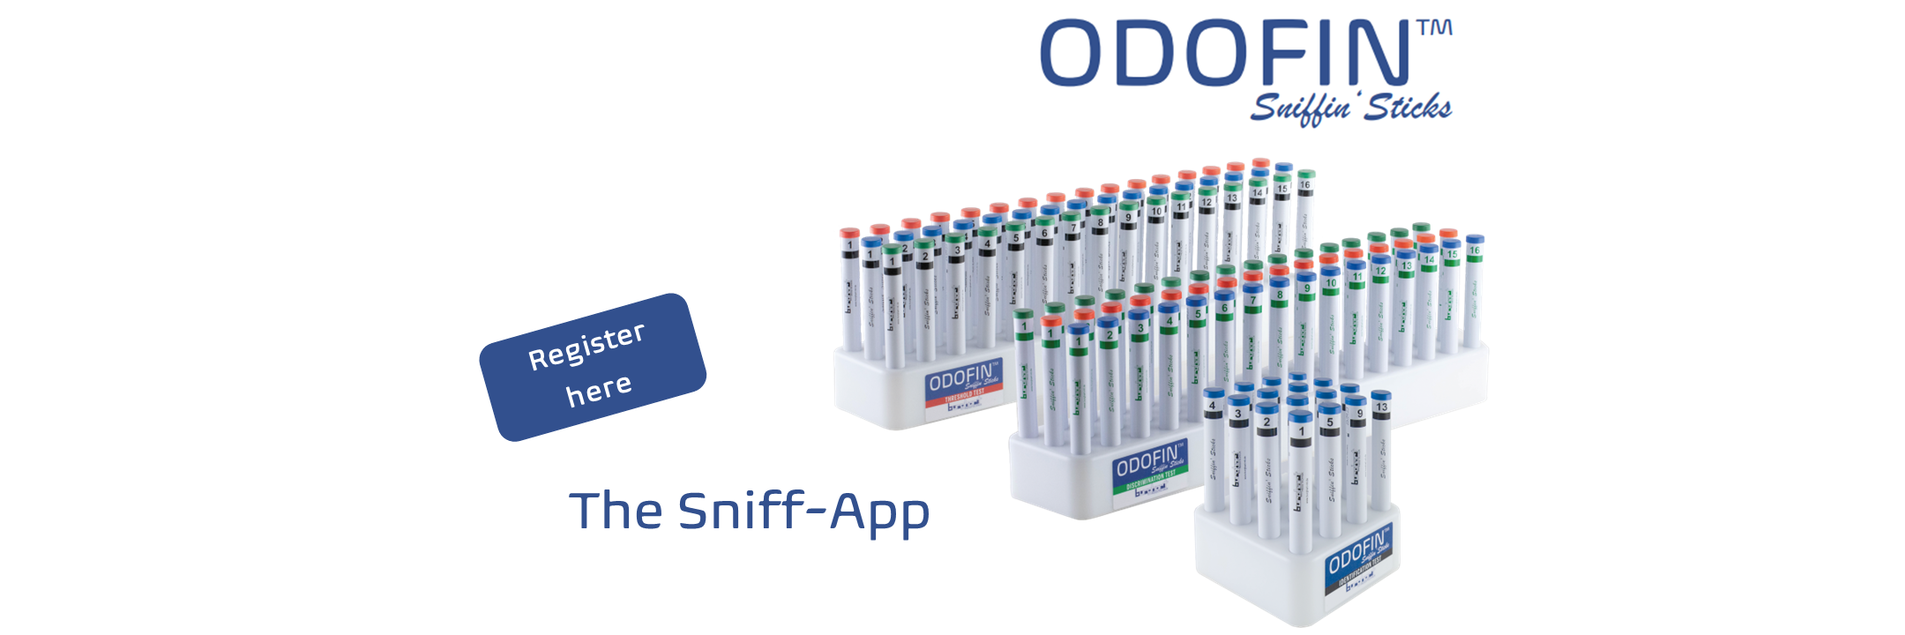 ODOFIN Sniff App Registrierung Startseite_EN